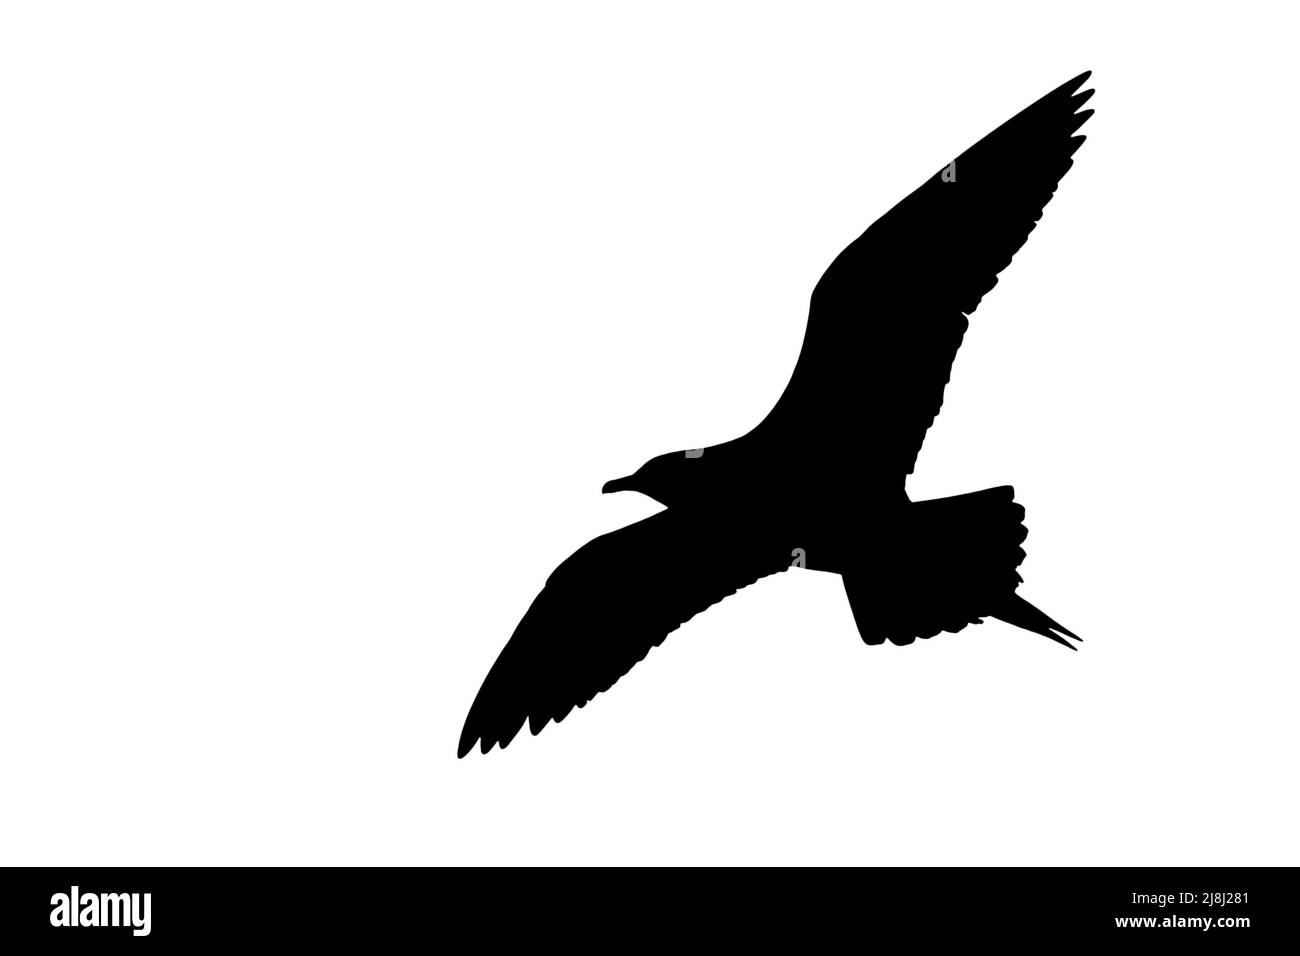 Silueta de skua ártica / jaeger parasitario (Stercorarius parasiticus) en vuelo contorneado sobre fondo blanco para mostrar alas, cabeza y cola forma Foto de stock